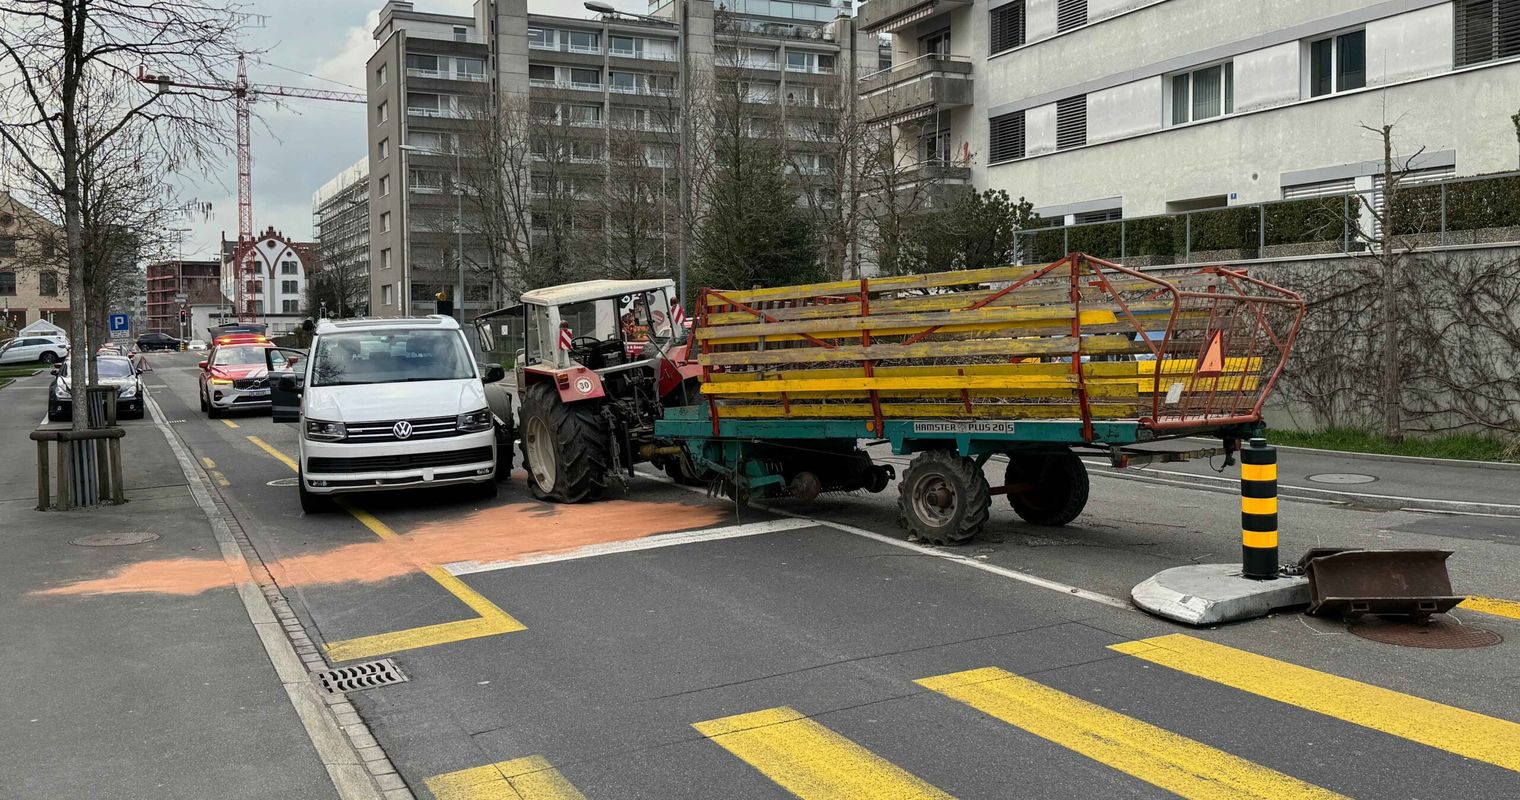 Stadt Zug: Traktor prallt in Auto auf der Gegenfahrbahn